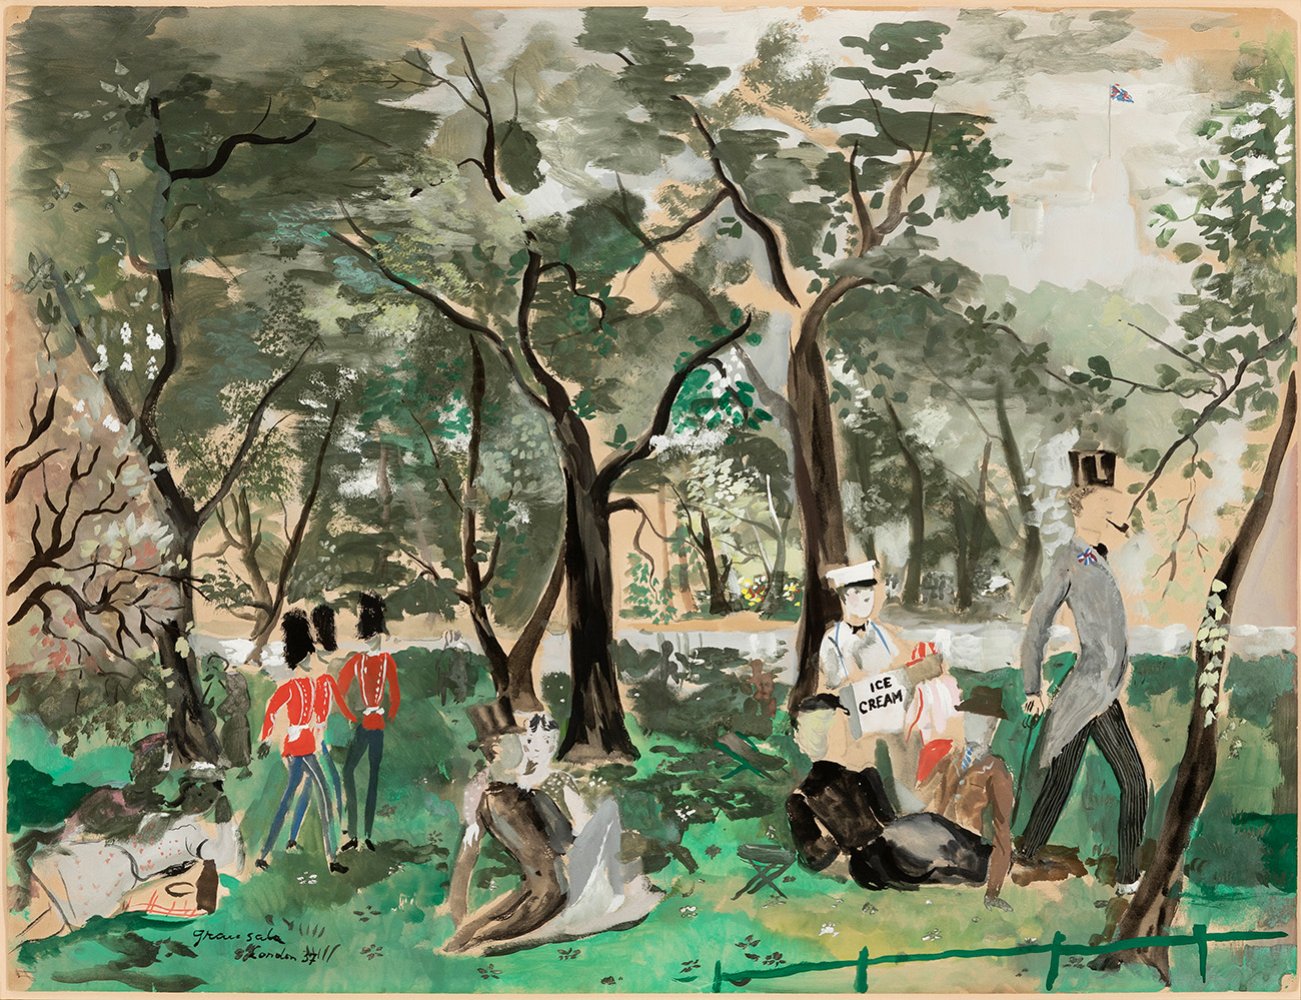 EMILIO GRAU SALA (Barcelona, 1911 - Paris, 1975)."Hyde Park. London, 1957.Watercolour and ink on